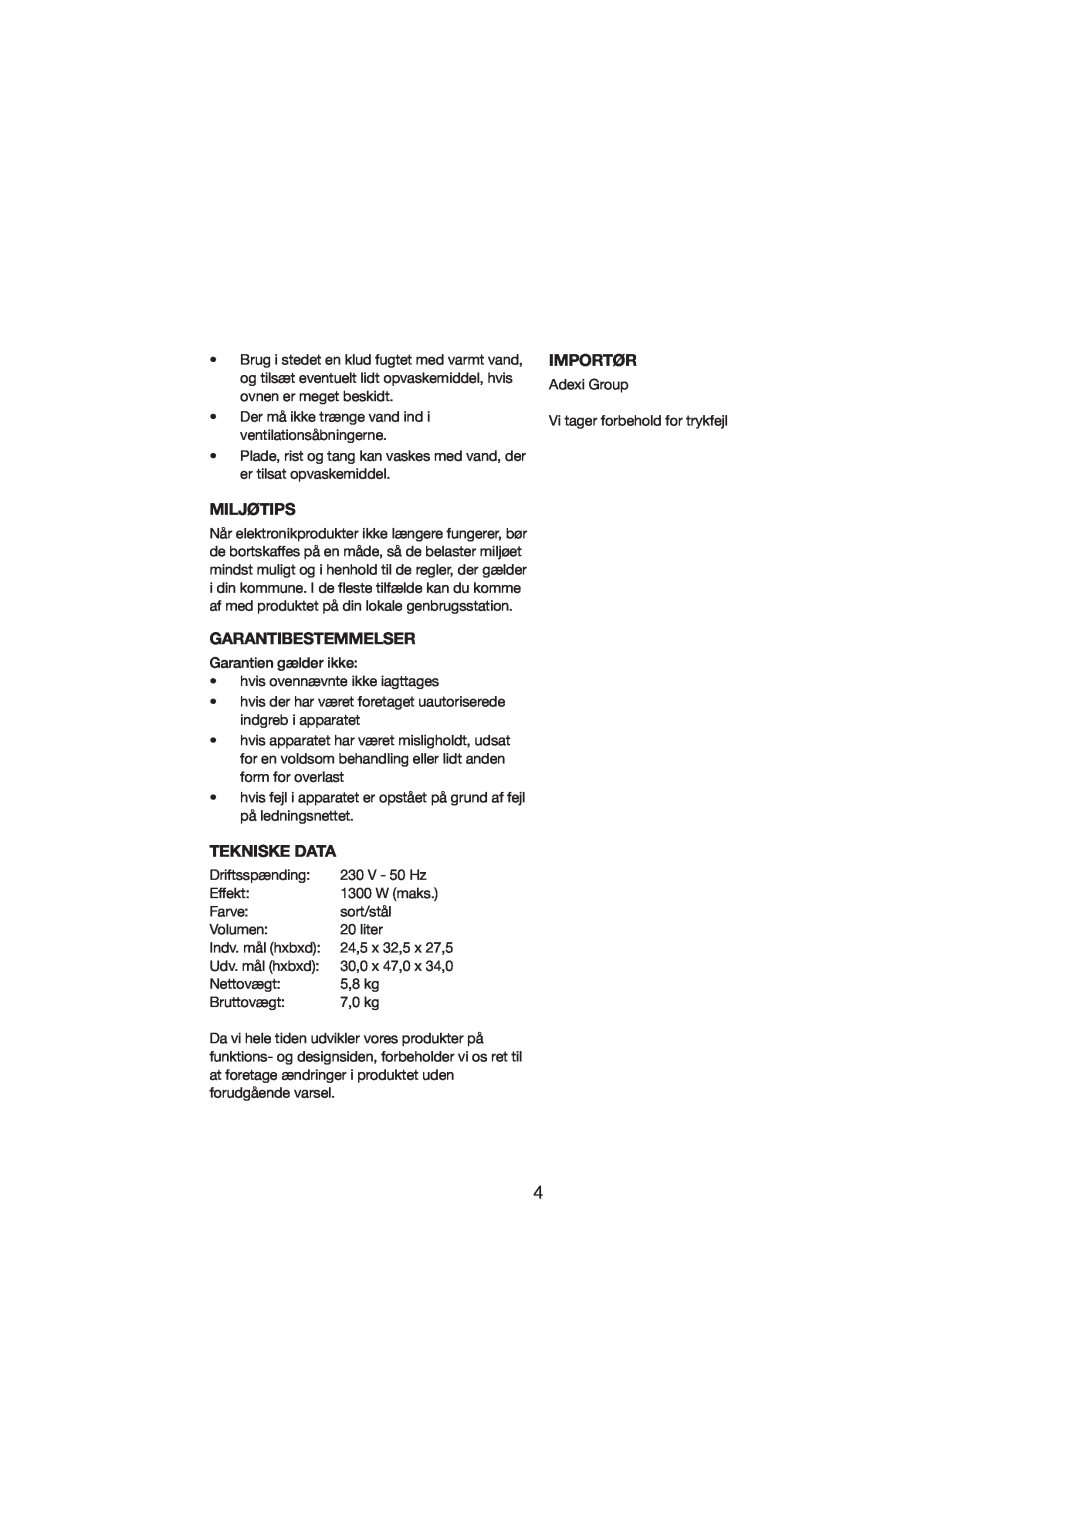 Melissa 251-003/004 manual Miljøtips, Garantibestemmelser, Tekniske Data, Importør 